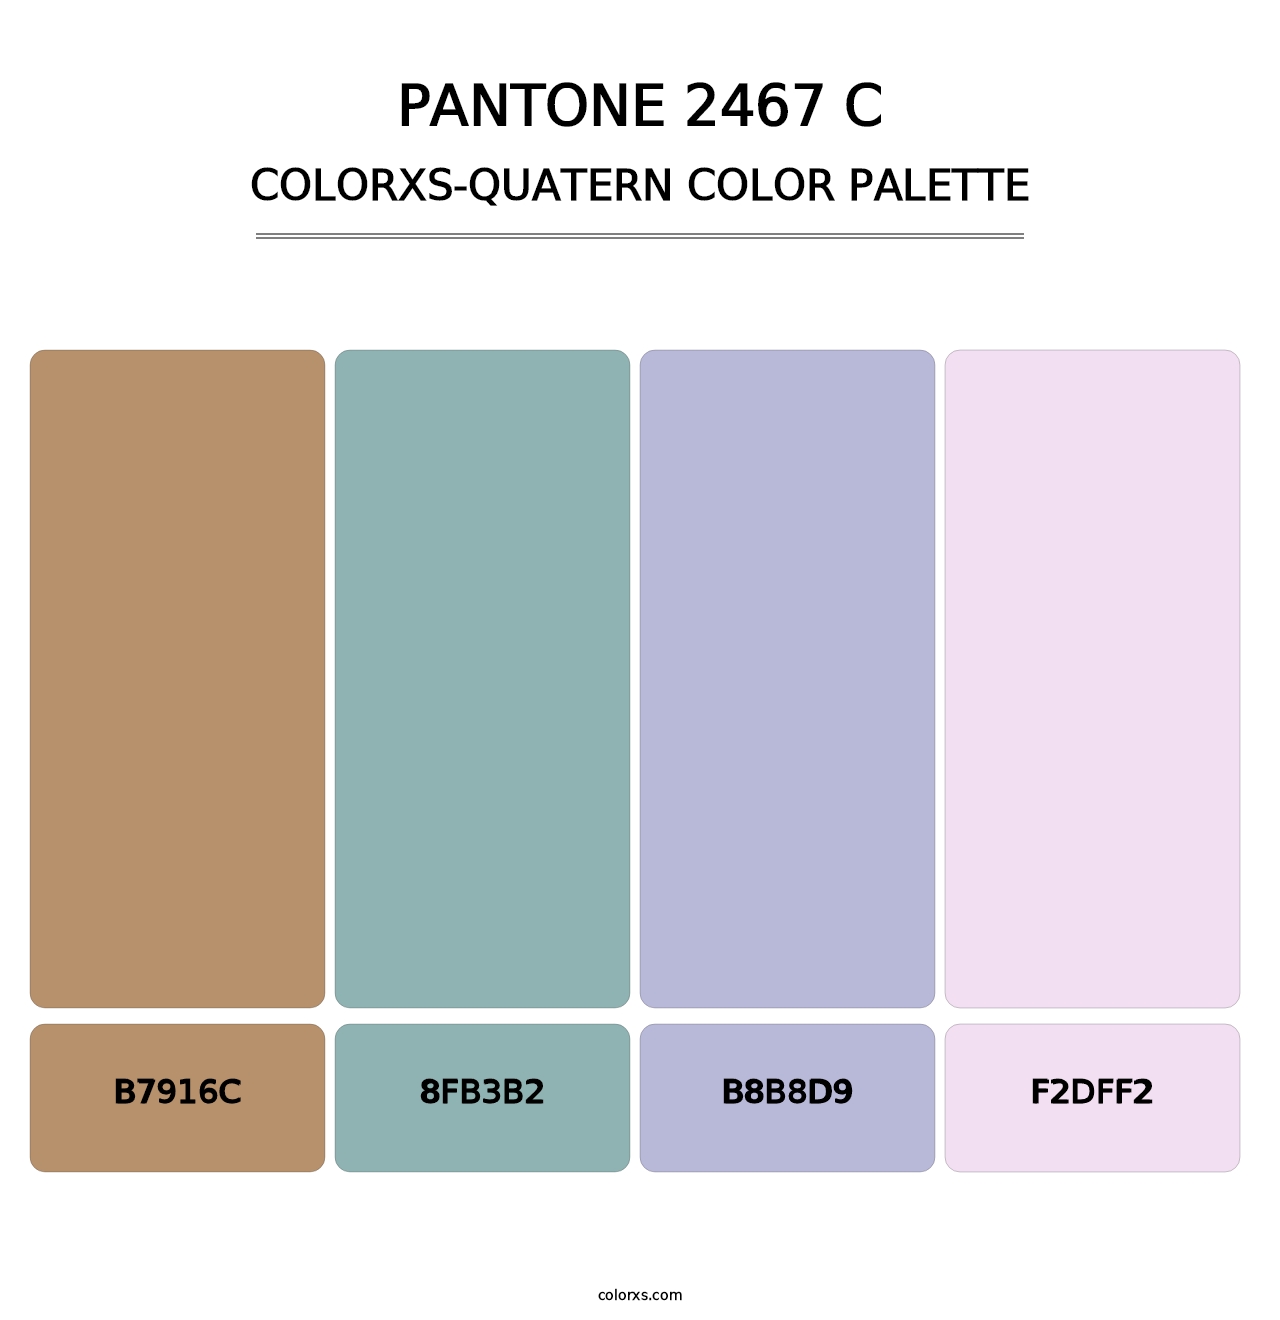 PANTONE 2467 C - Colorxs Quatern Palette